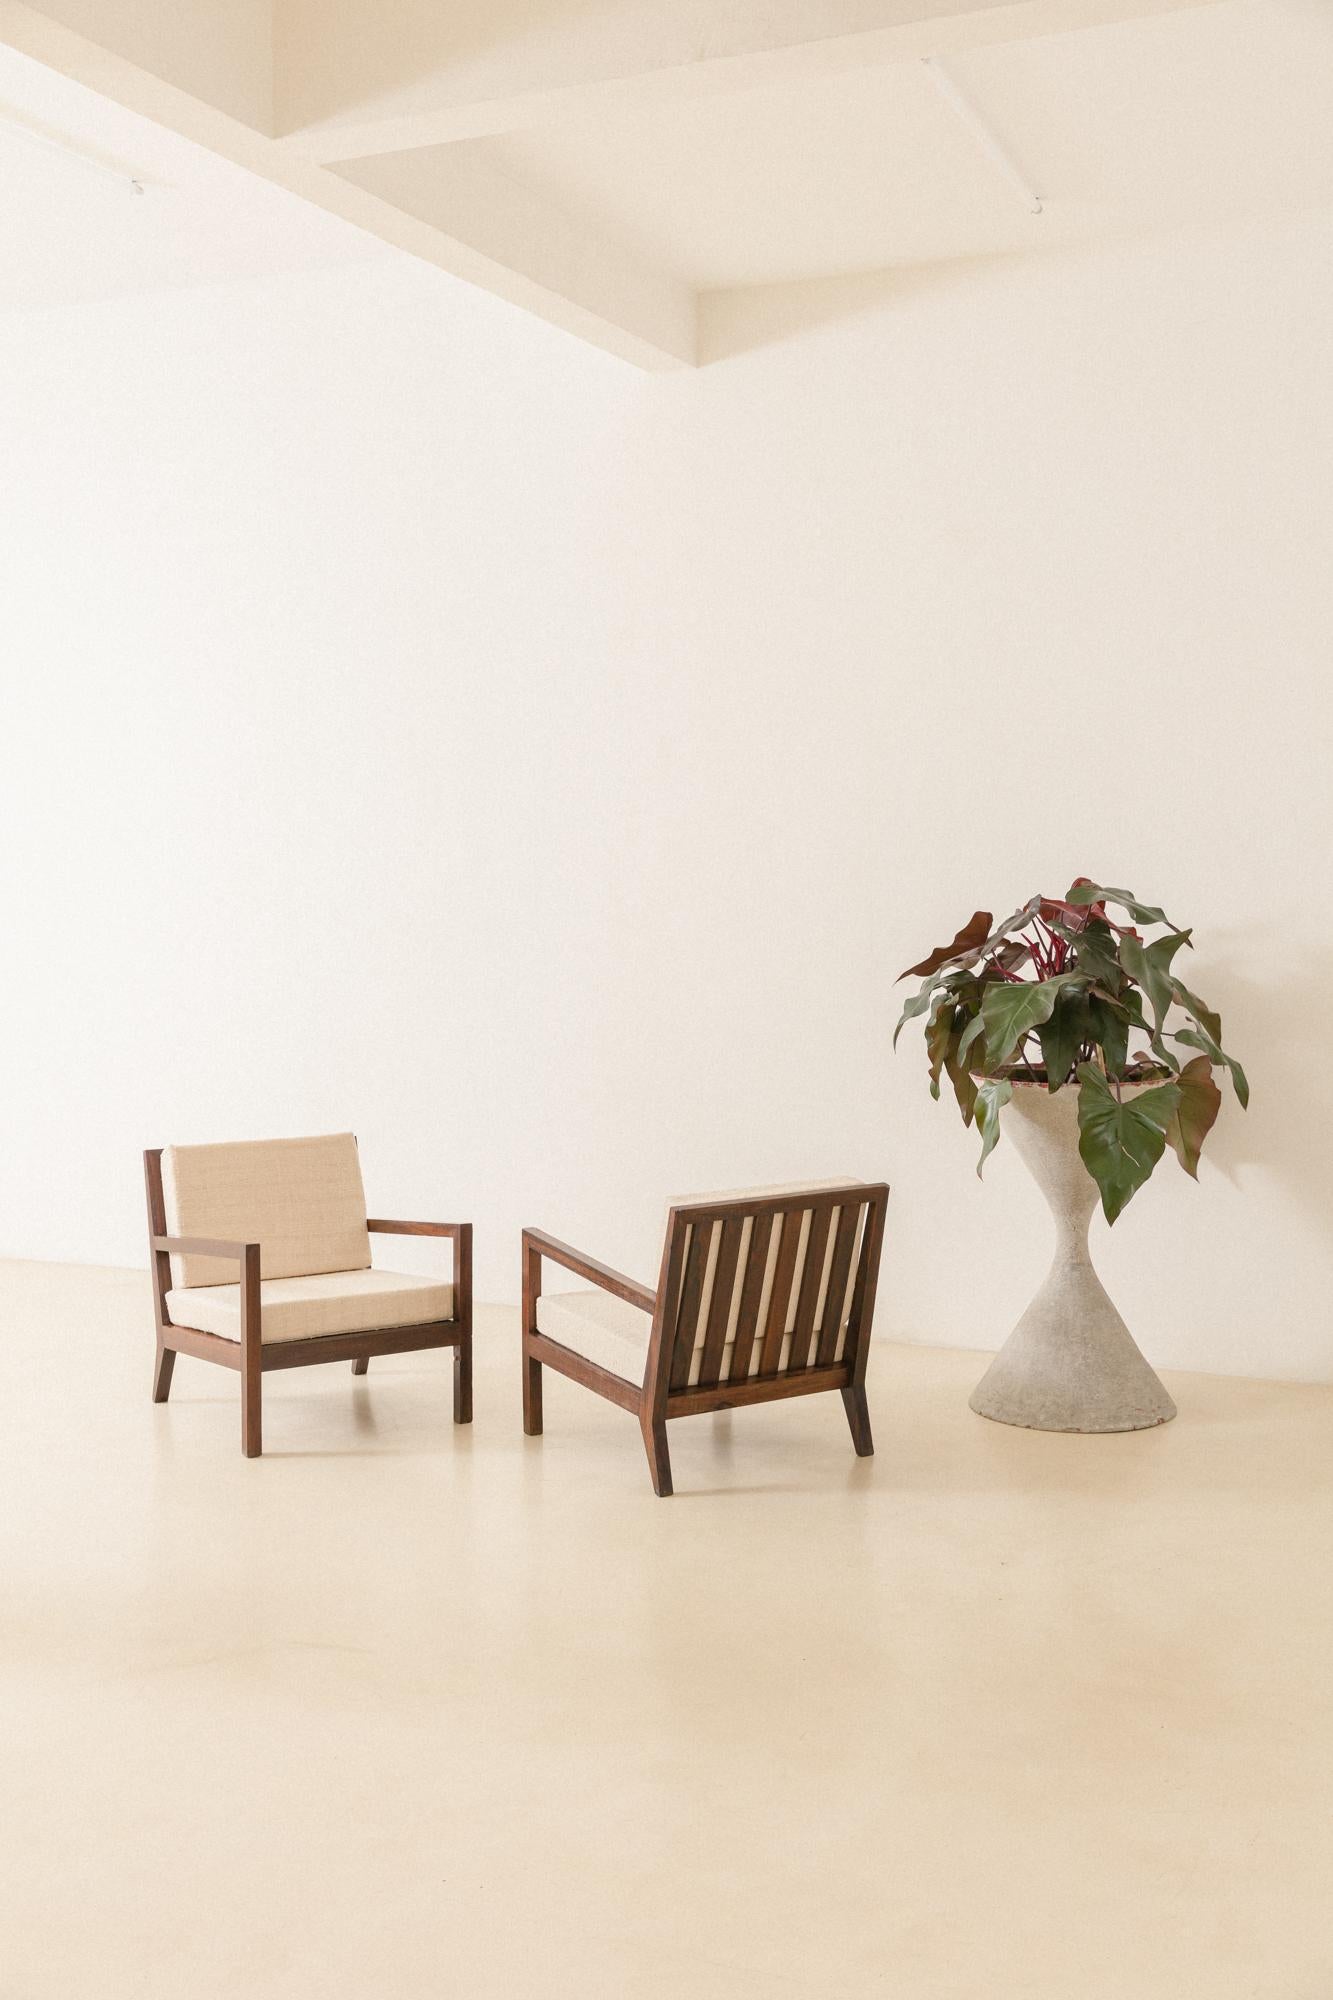 Dieses schöne Sesselpaar mit Lattenrost und Rückenlehne wurde in den 1960er Jahren hergestellt.

Die Stücke sind aus massivem brasilianischem Palisanderholz gefertigt. Die Sessel haben ein rechteckiges Design mit einer Rückenlehne aus vertikalen